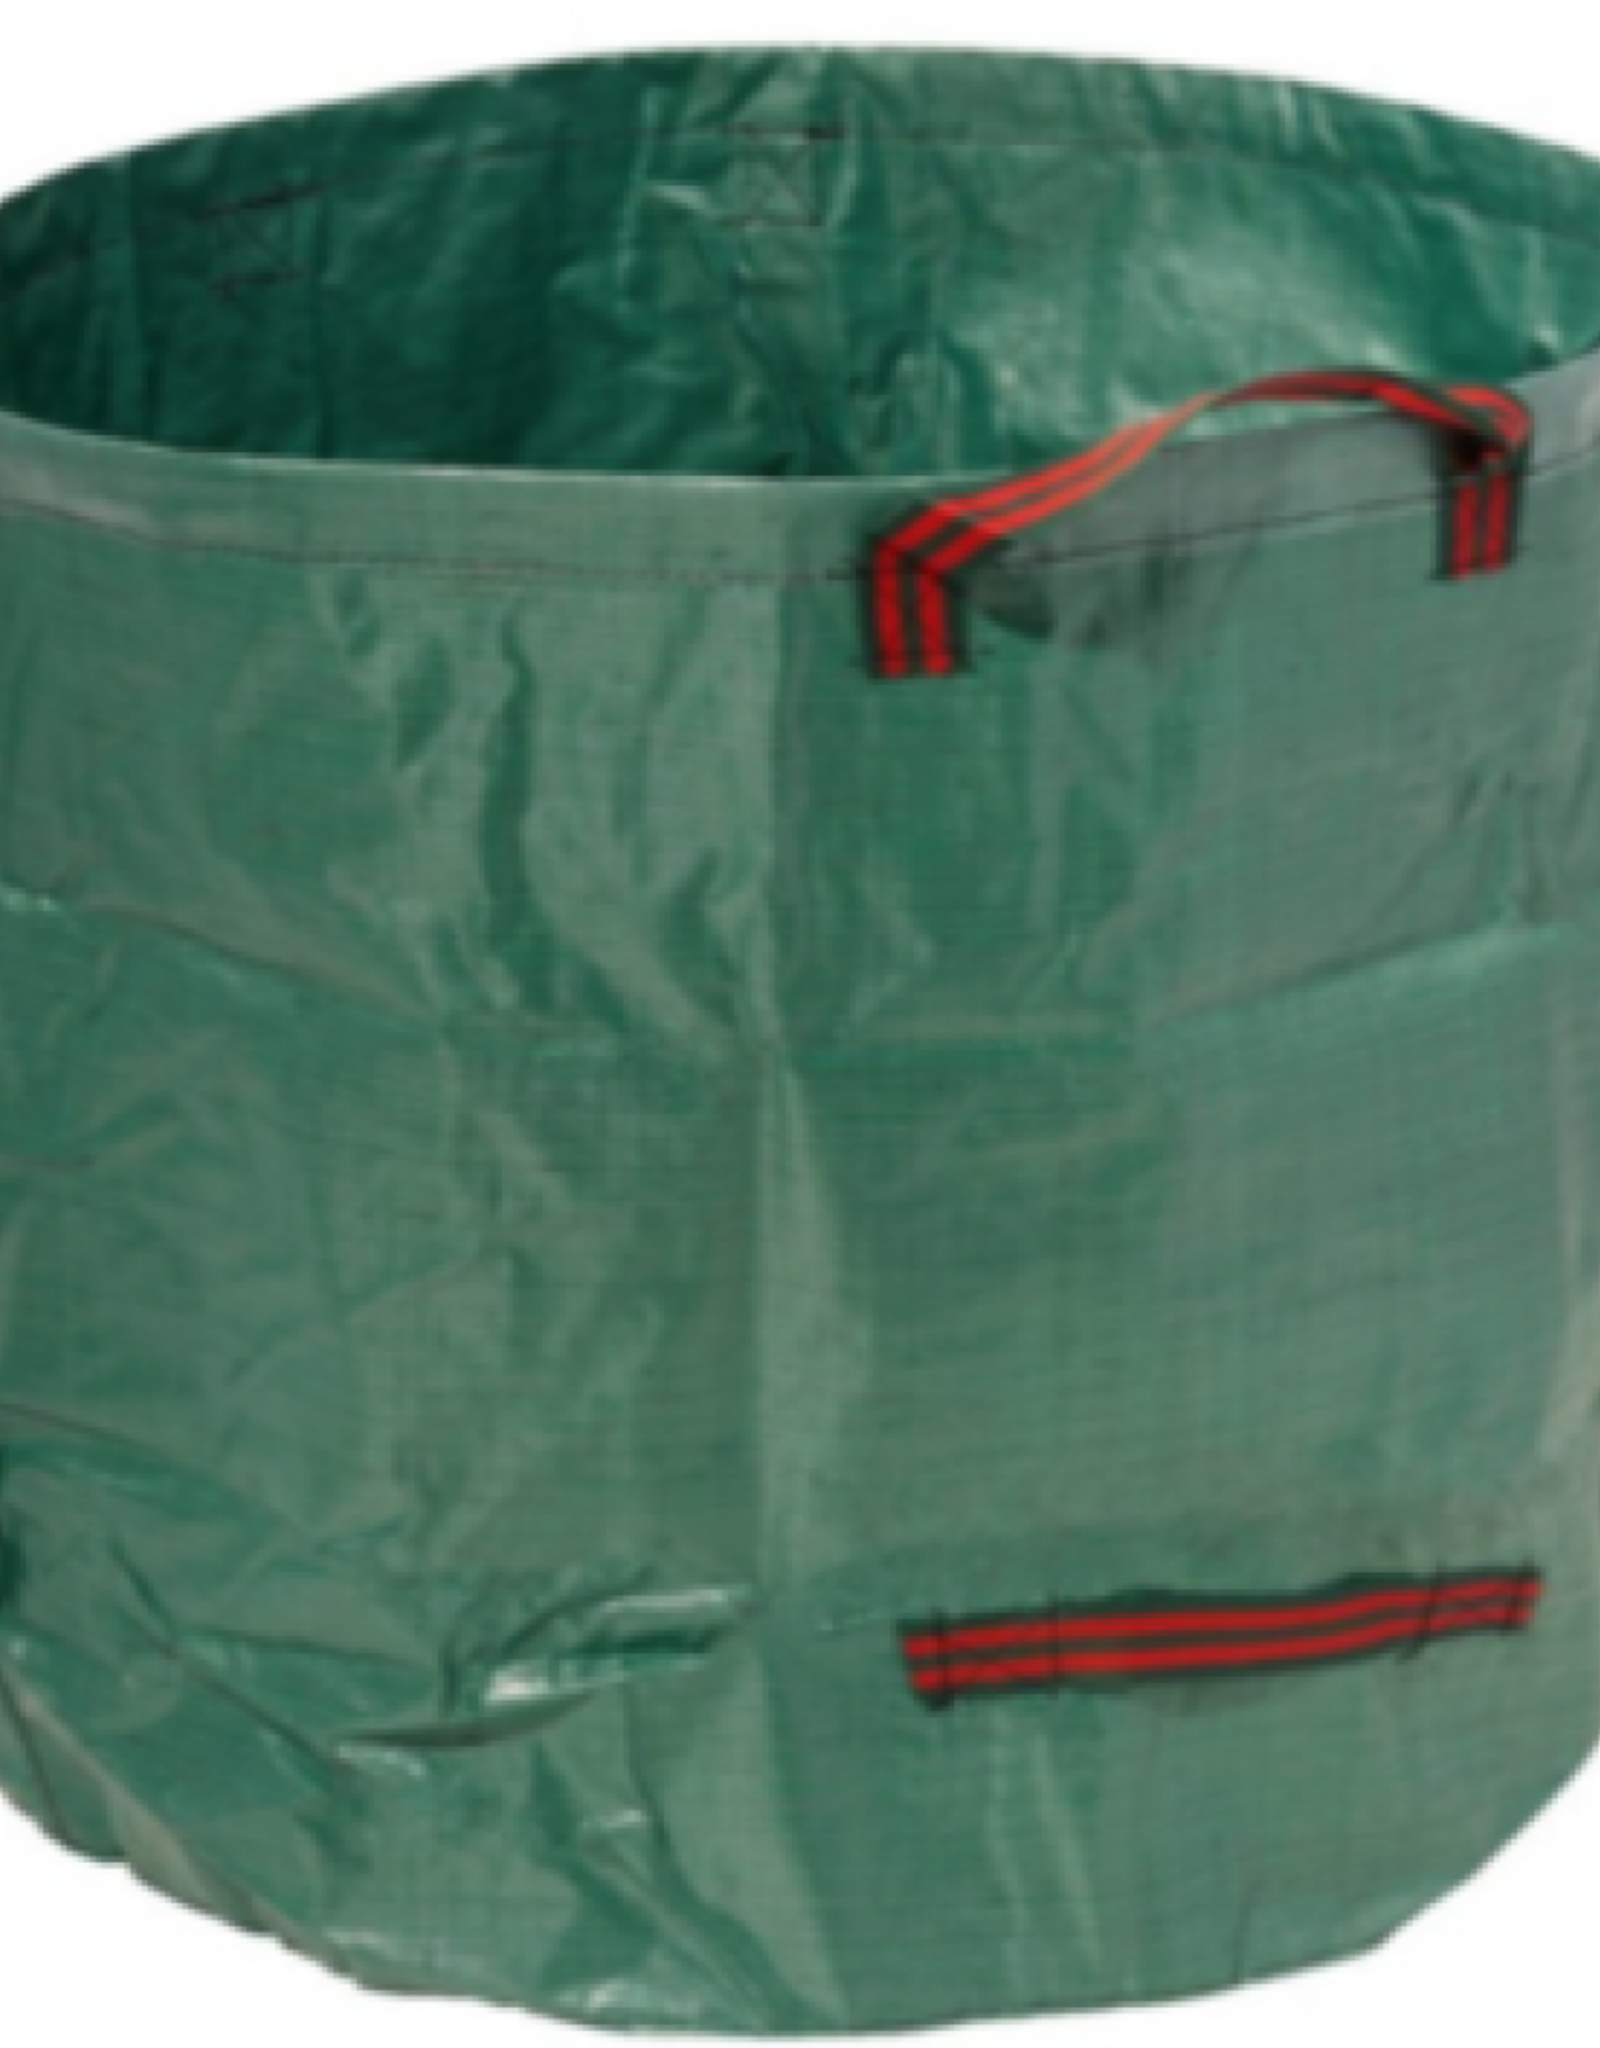 Reusable Leaf Bag 270L